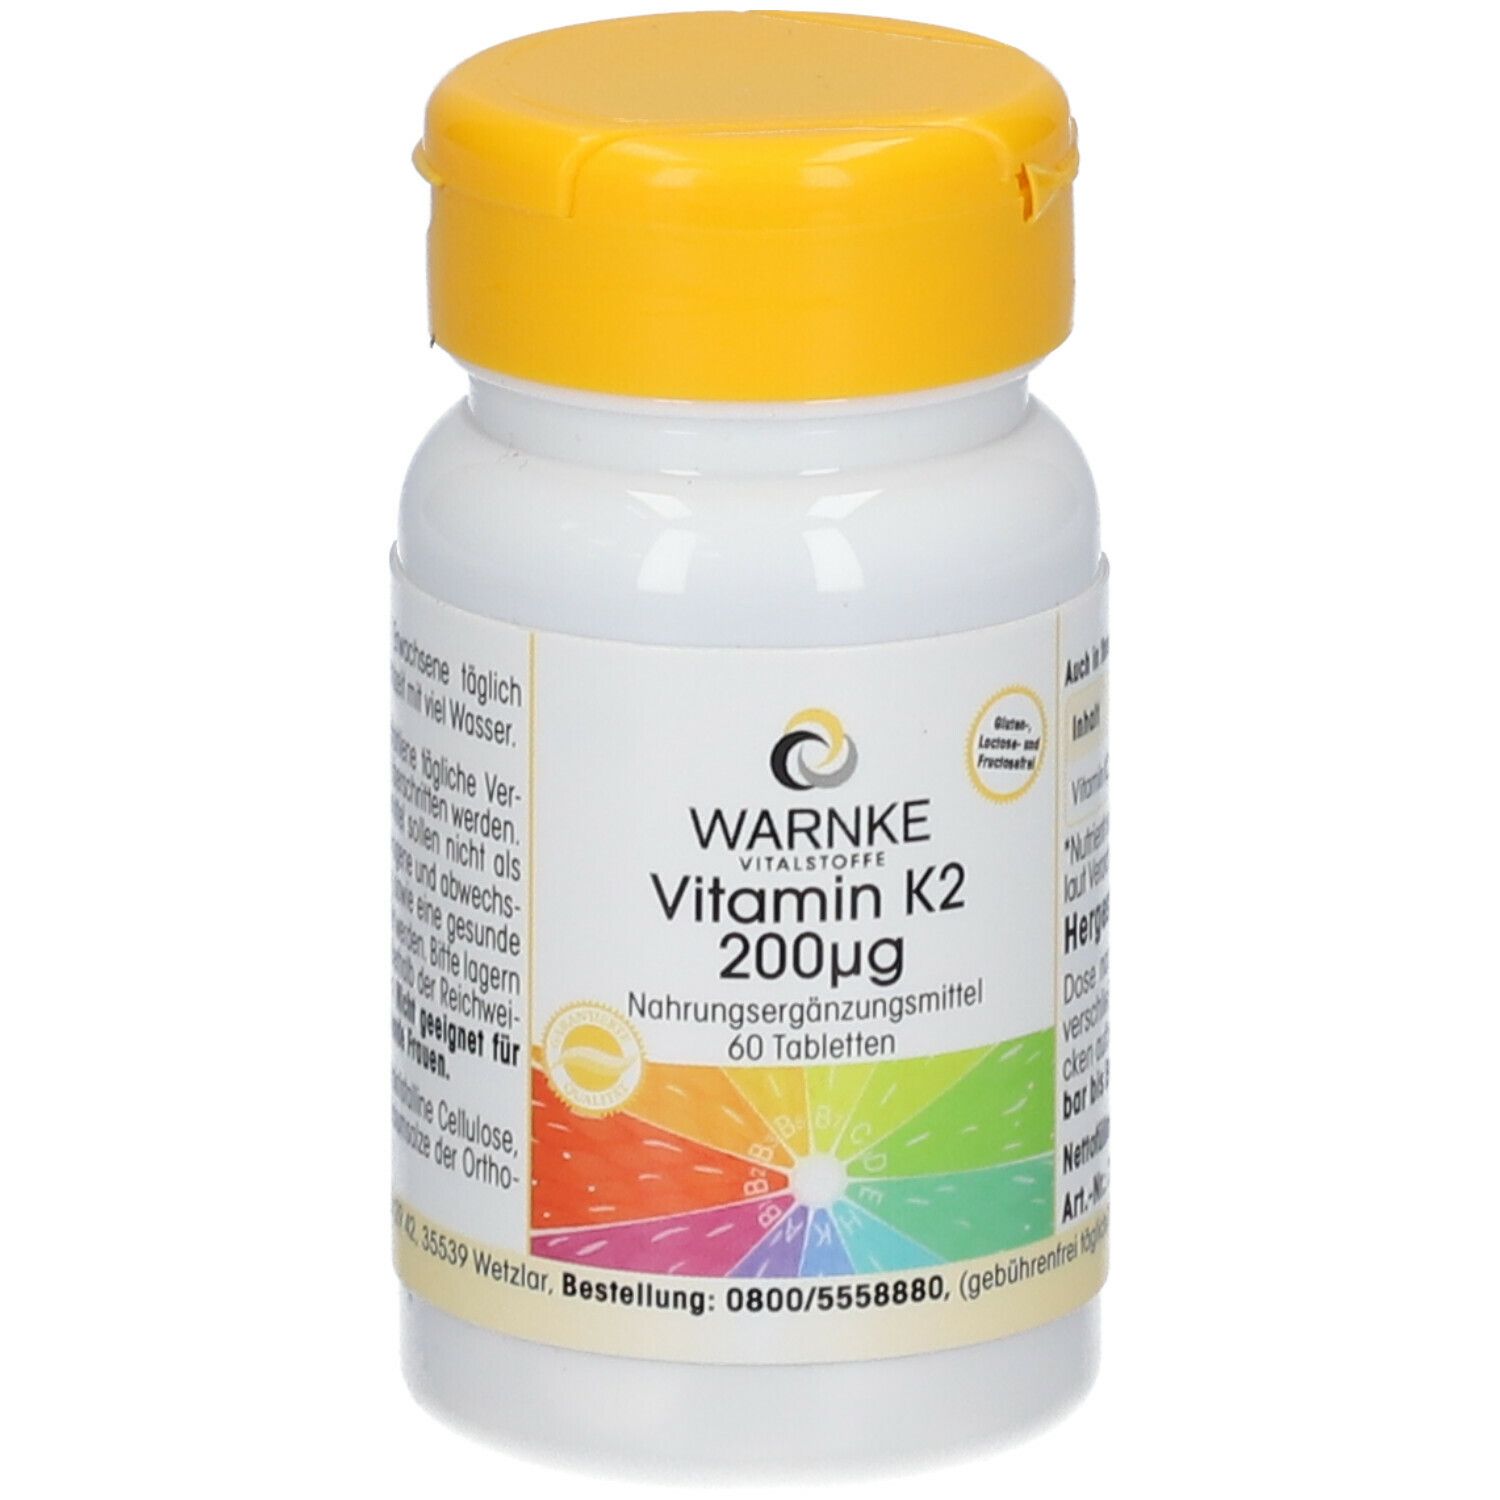 WARNKE Vitamin K2 200 µg